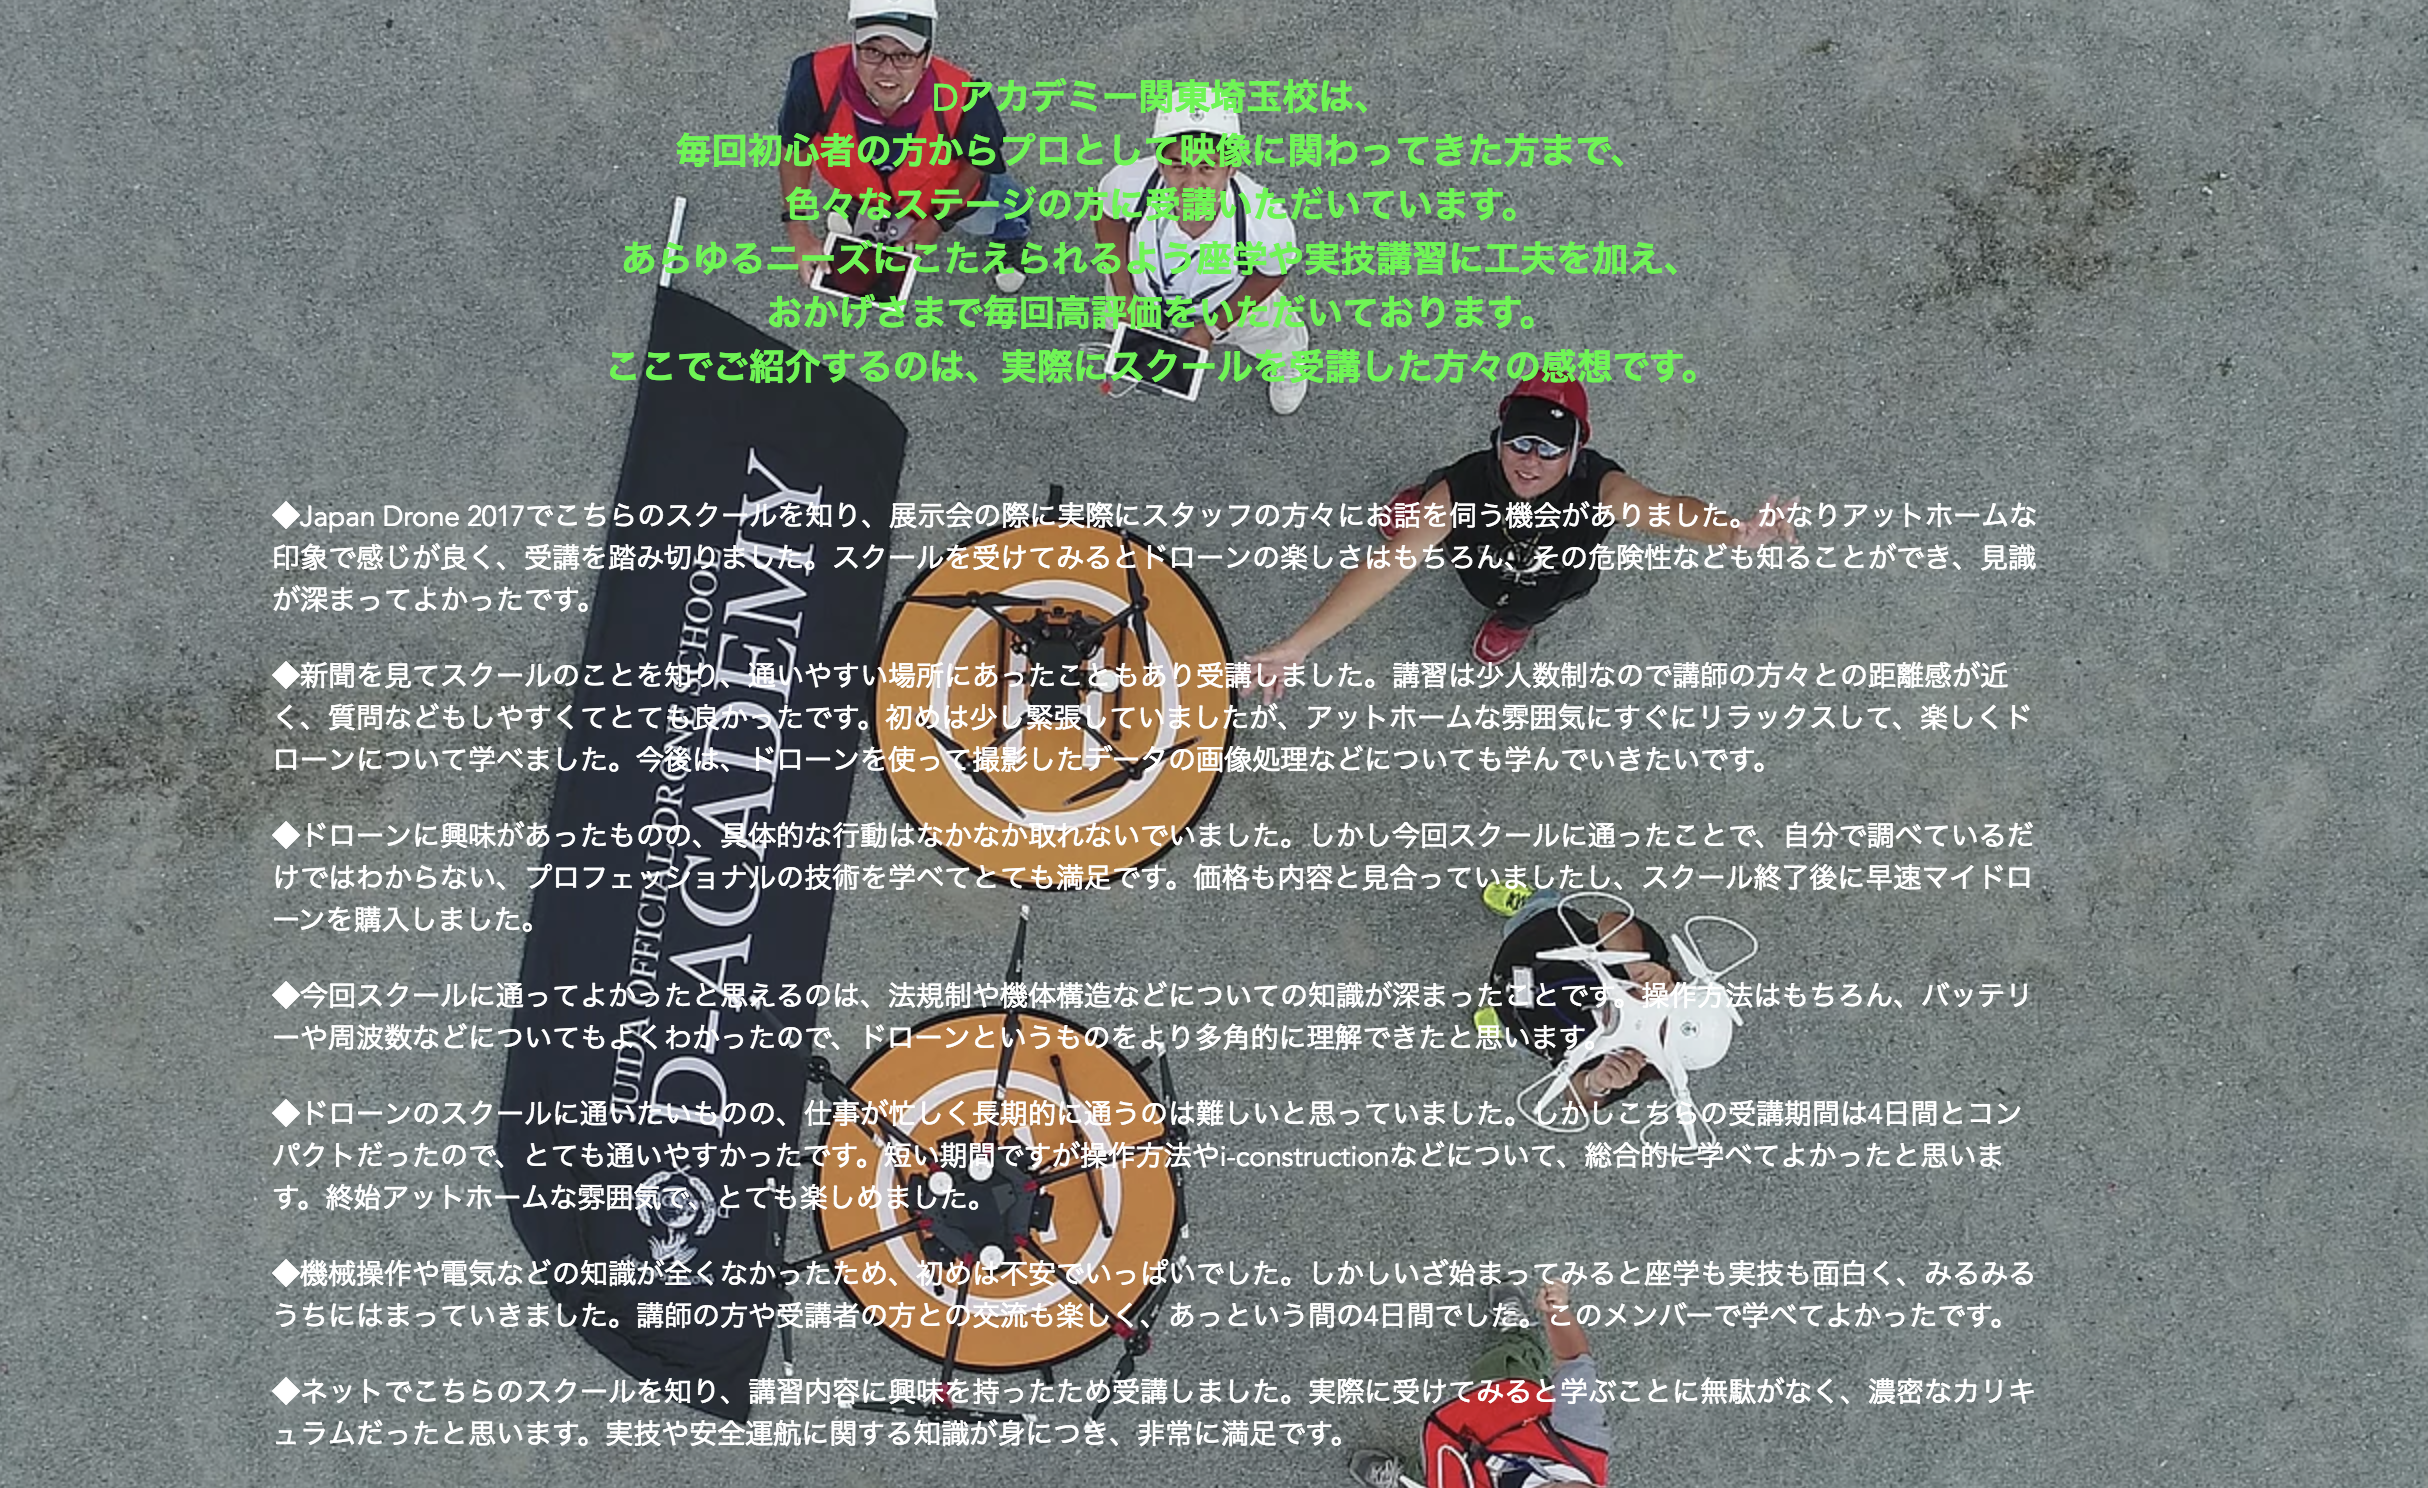 【D-ACADEMY関東埼玉】第19期 JUIDA認定スクール （３日間 平日基礎コース）